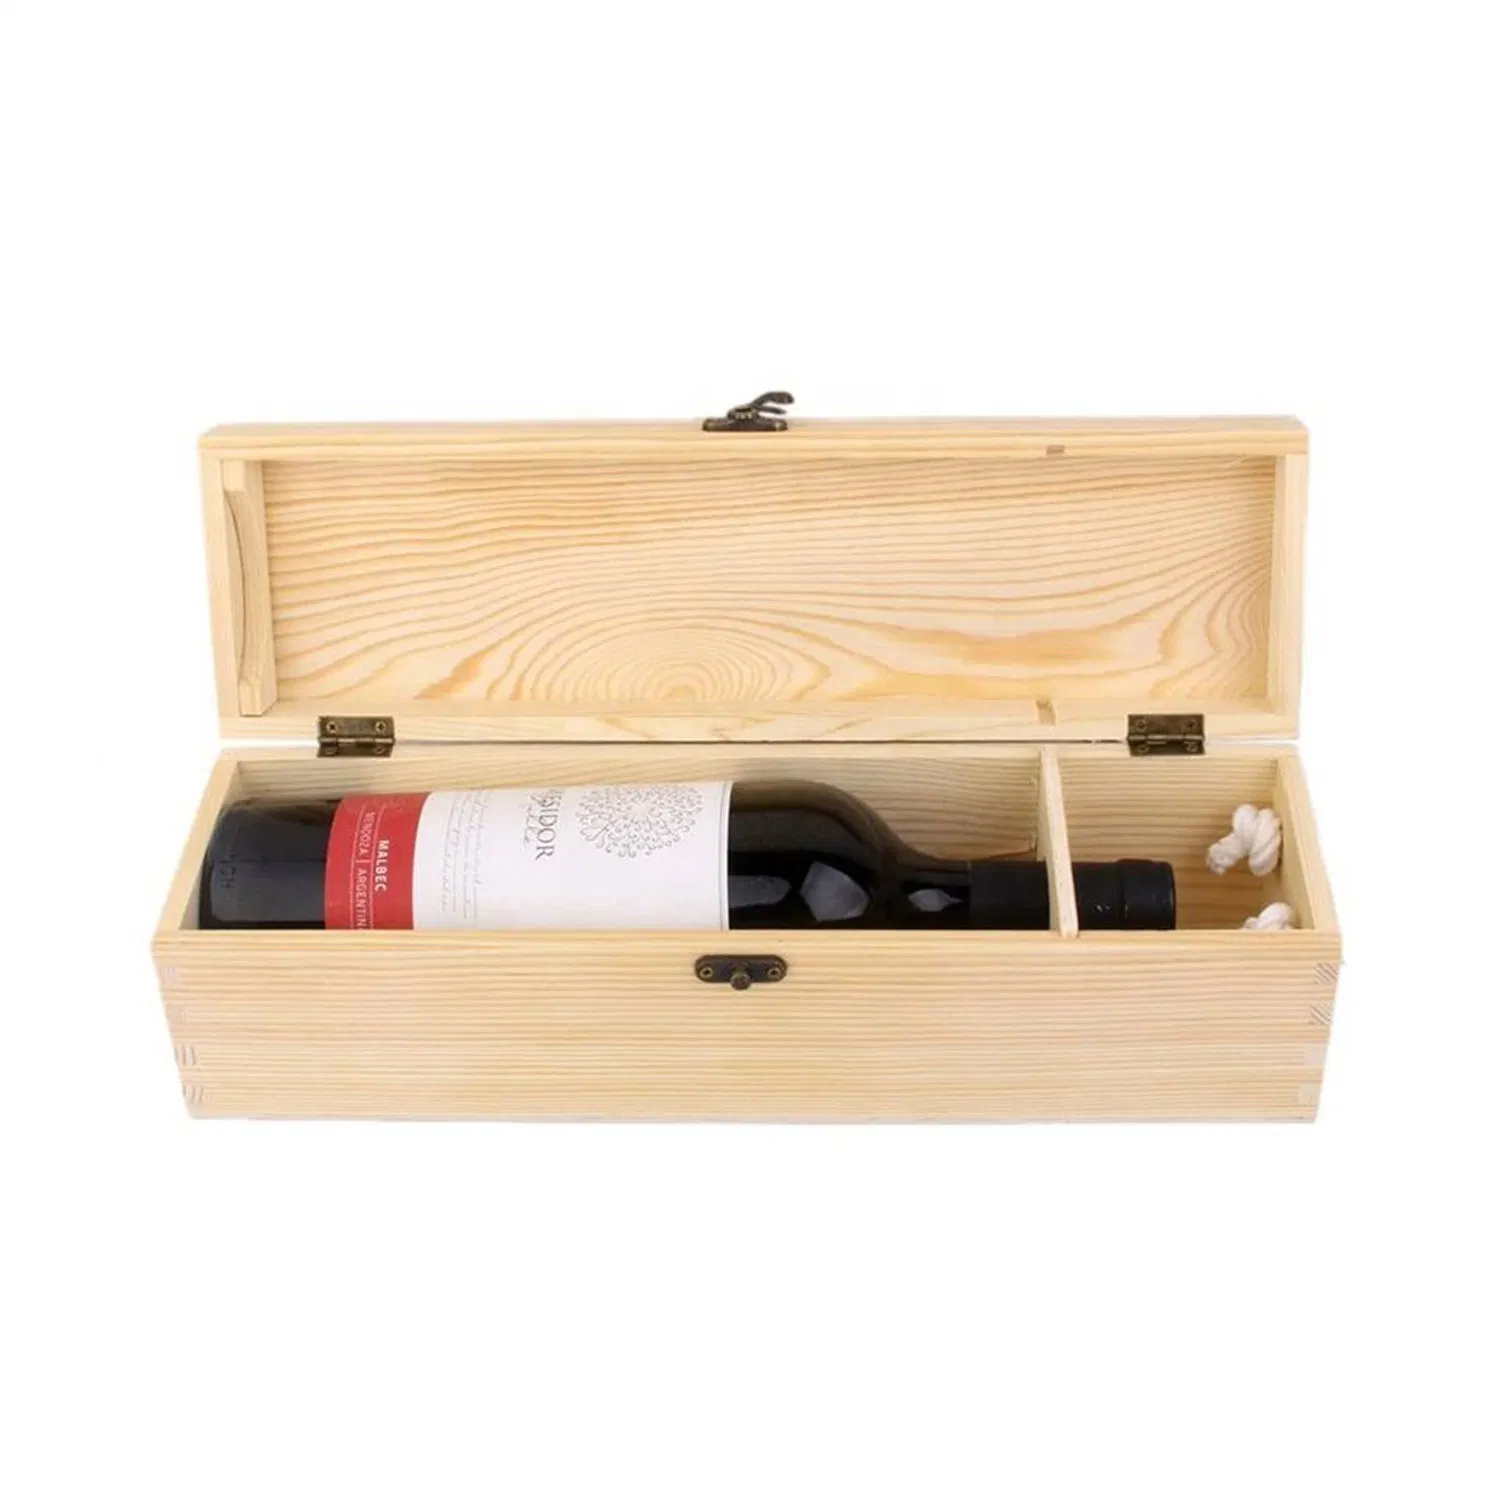 Caixa de vinho em Madeira Vermelha inacabada e caixa de armazenamento para trabalhos em bricolage